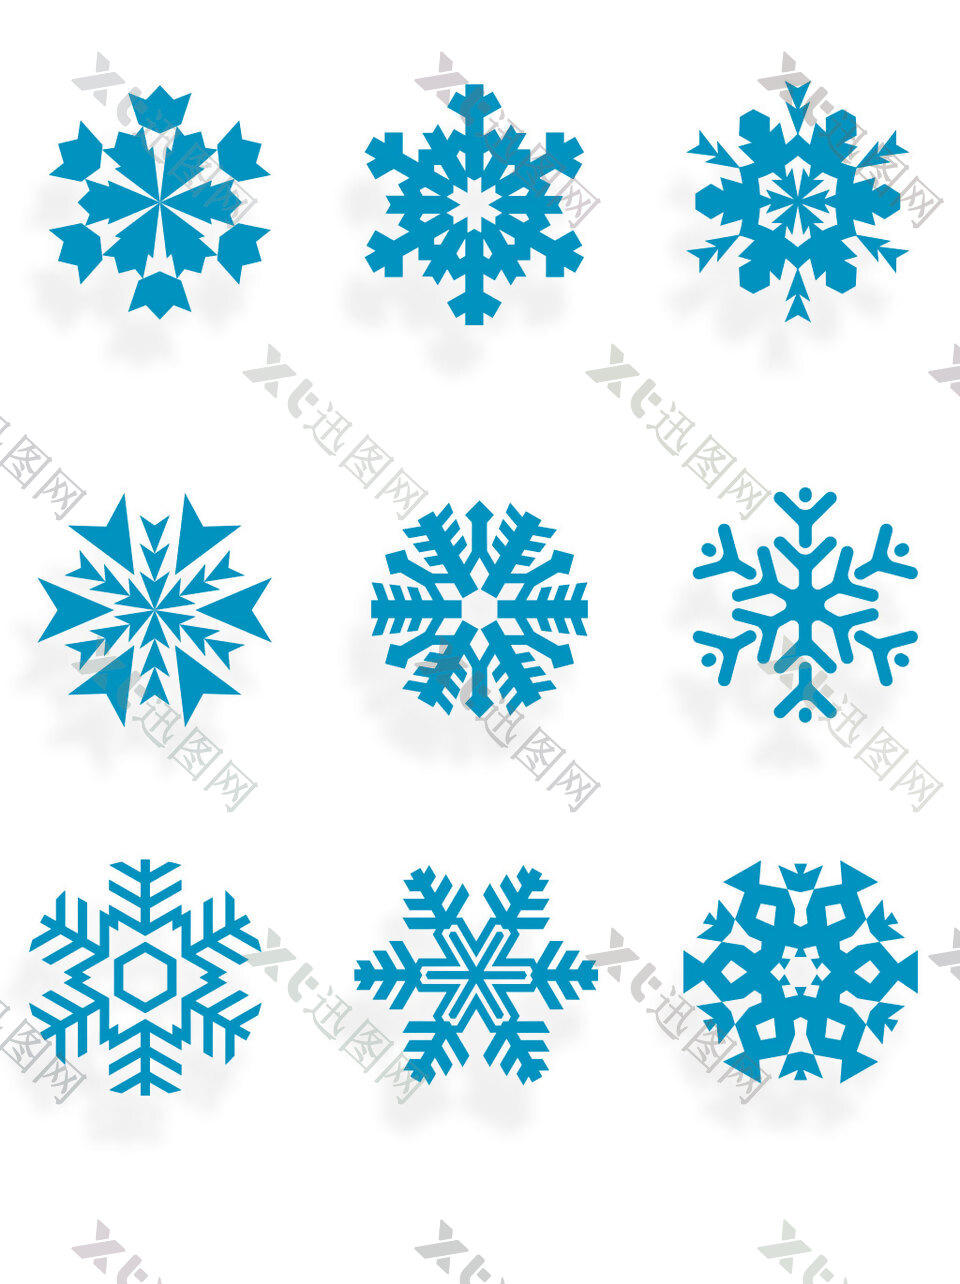 冬日雪花装饰素材矢量设计图案集合